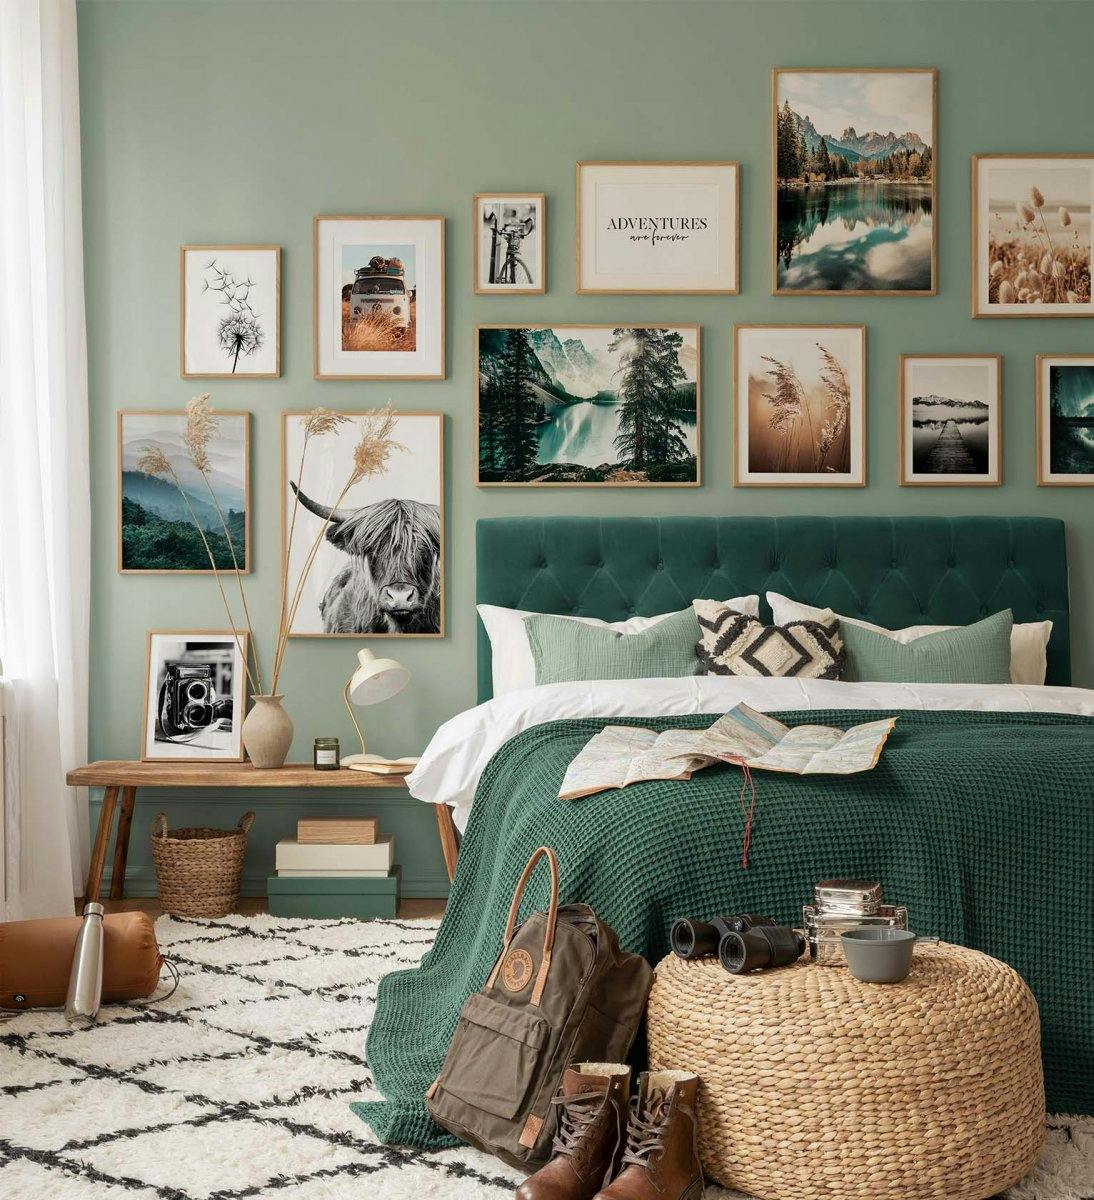 자연에서 영감을 받은 녹색 테마의 작품과 오크 프레임이 아름답게 어우러진 침실용 갤러리월